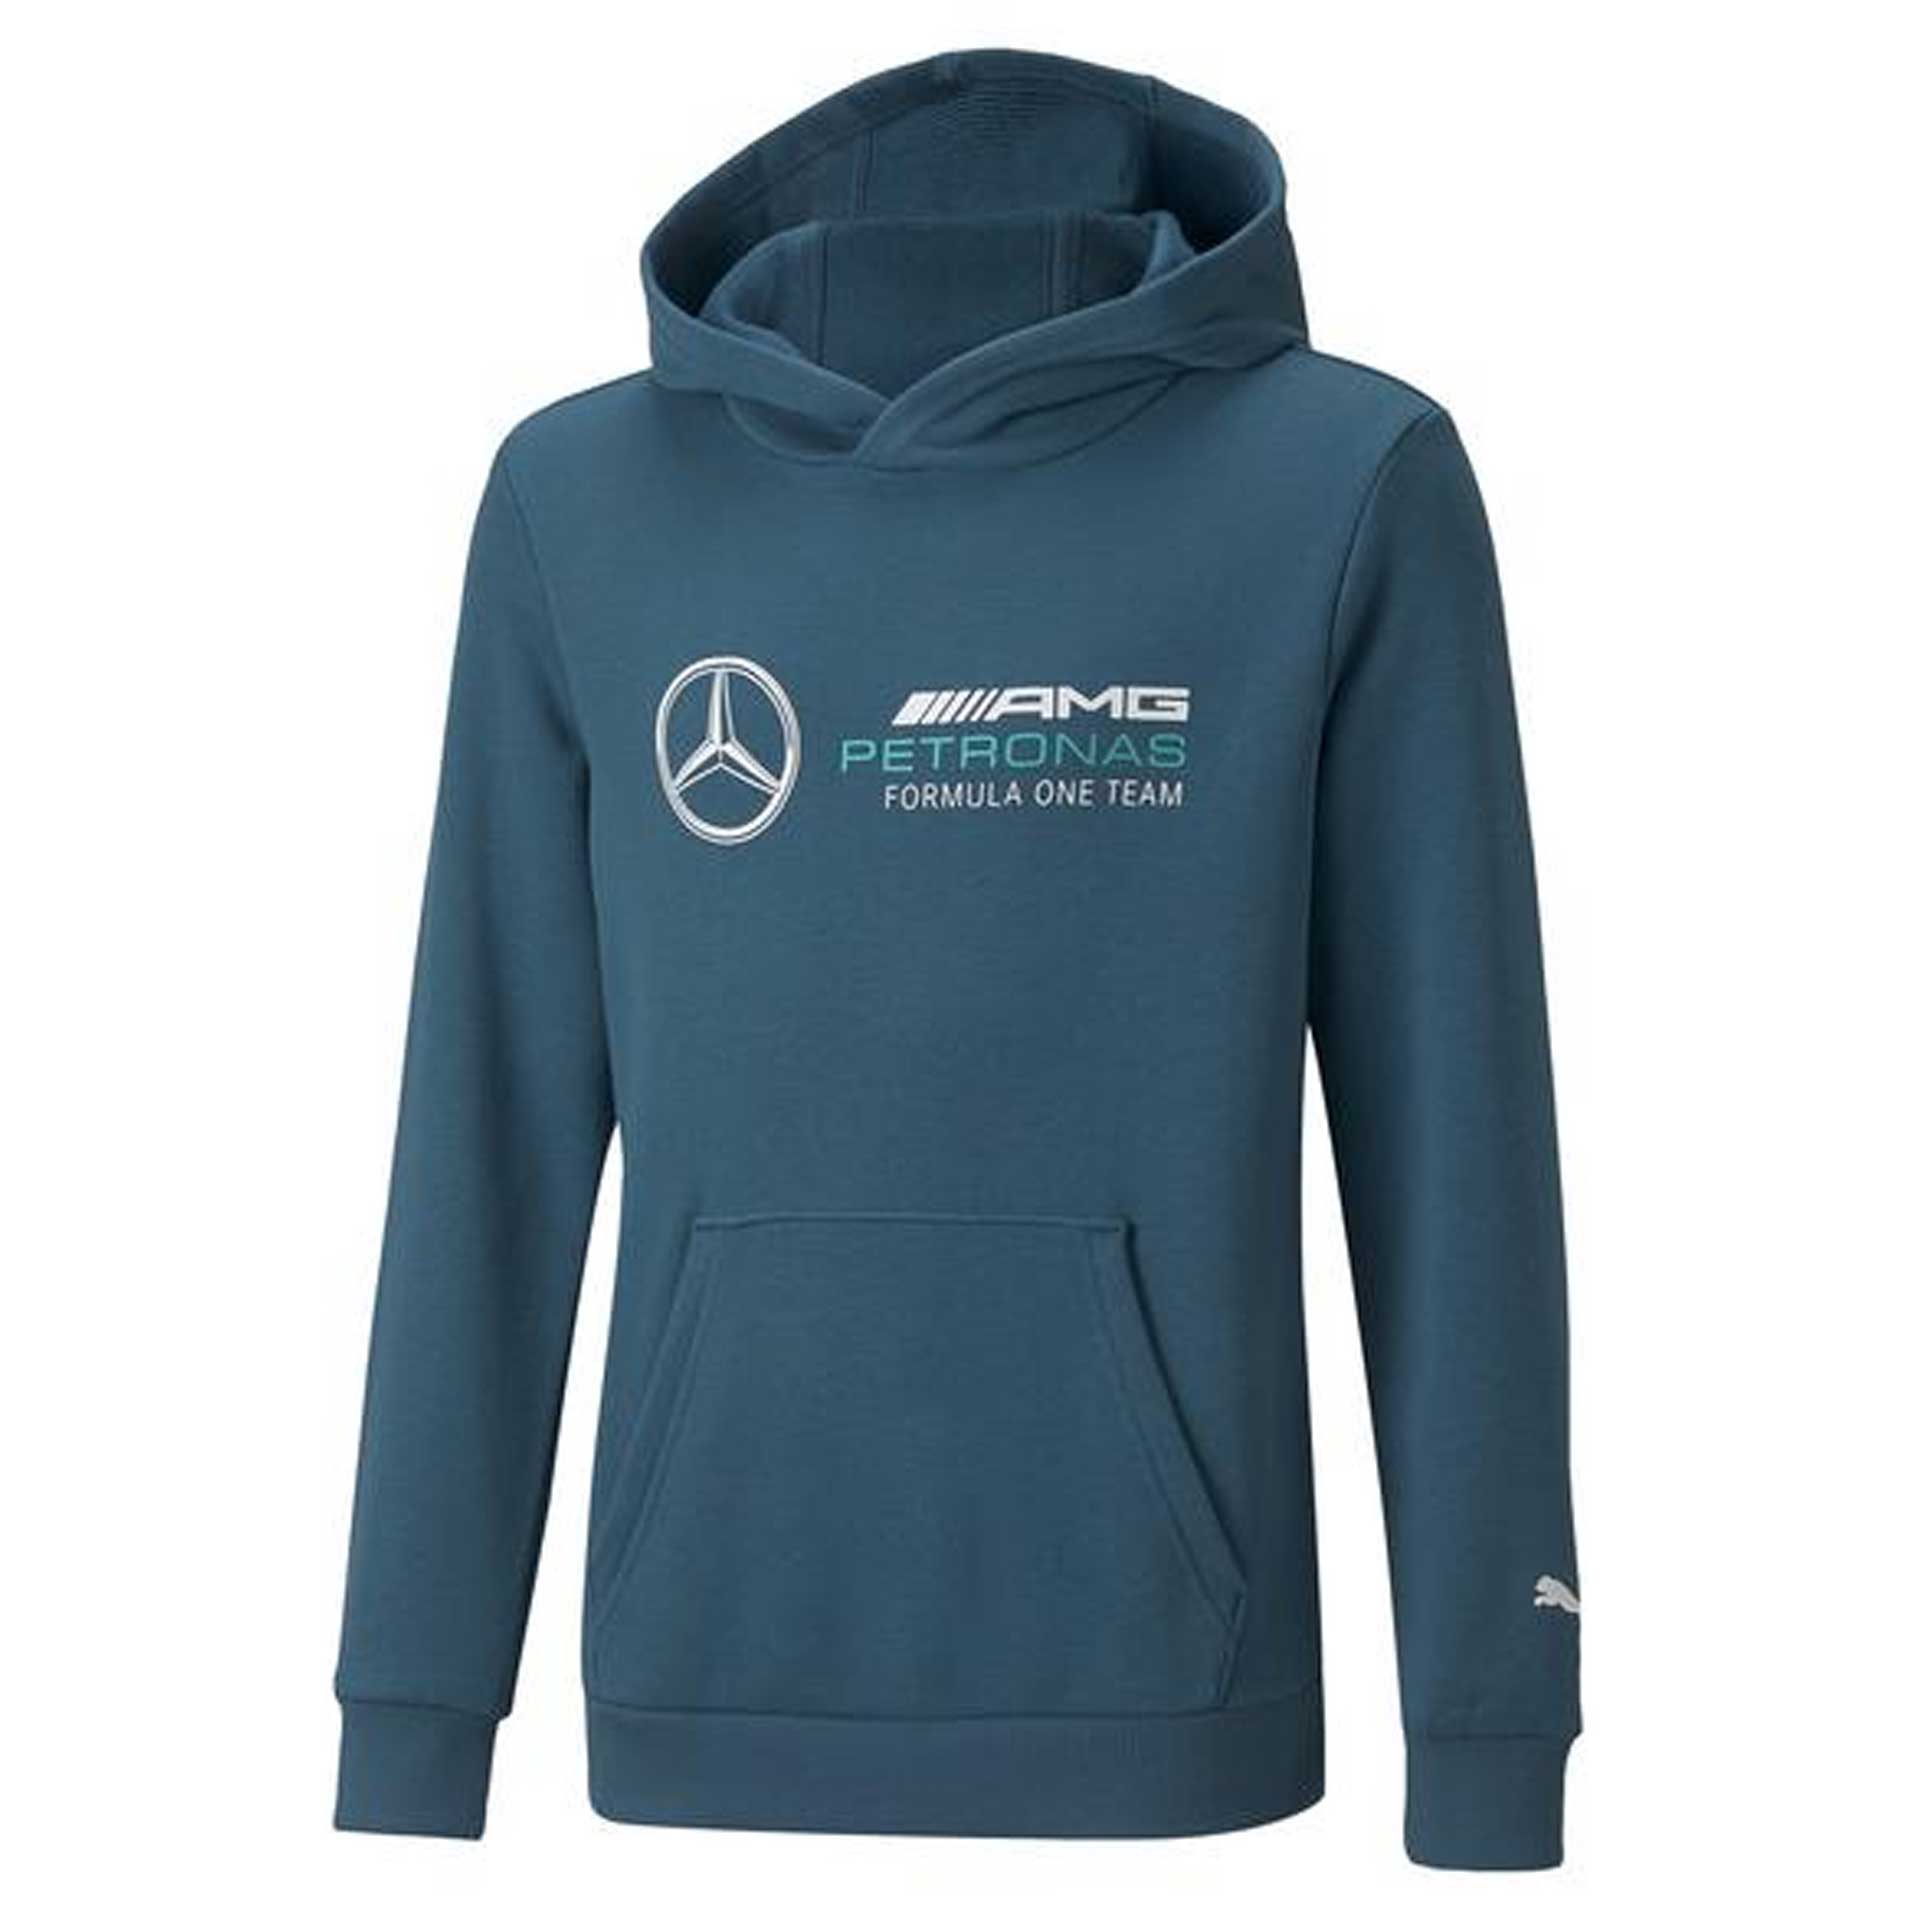 Mercedes-AMG Sweathoody Kinder blau Petronas Motorsports Collection by PUMA Größe 116 B67997353